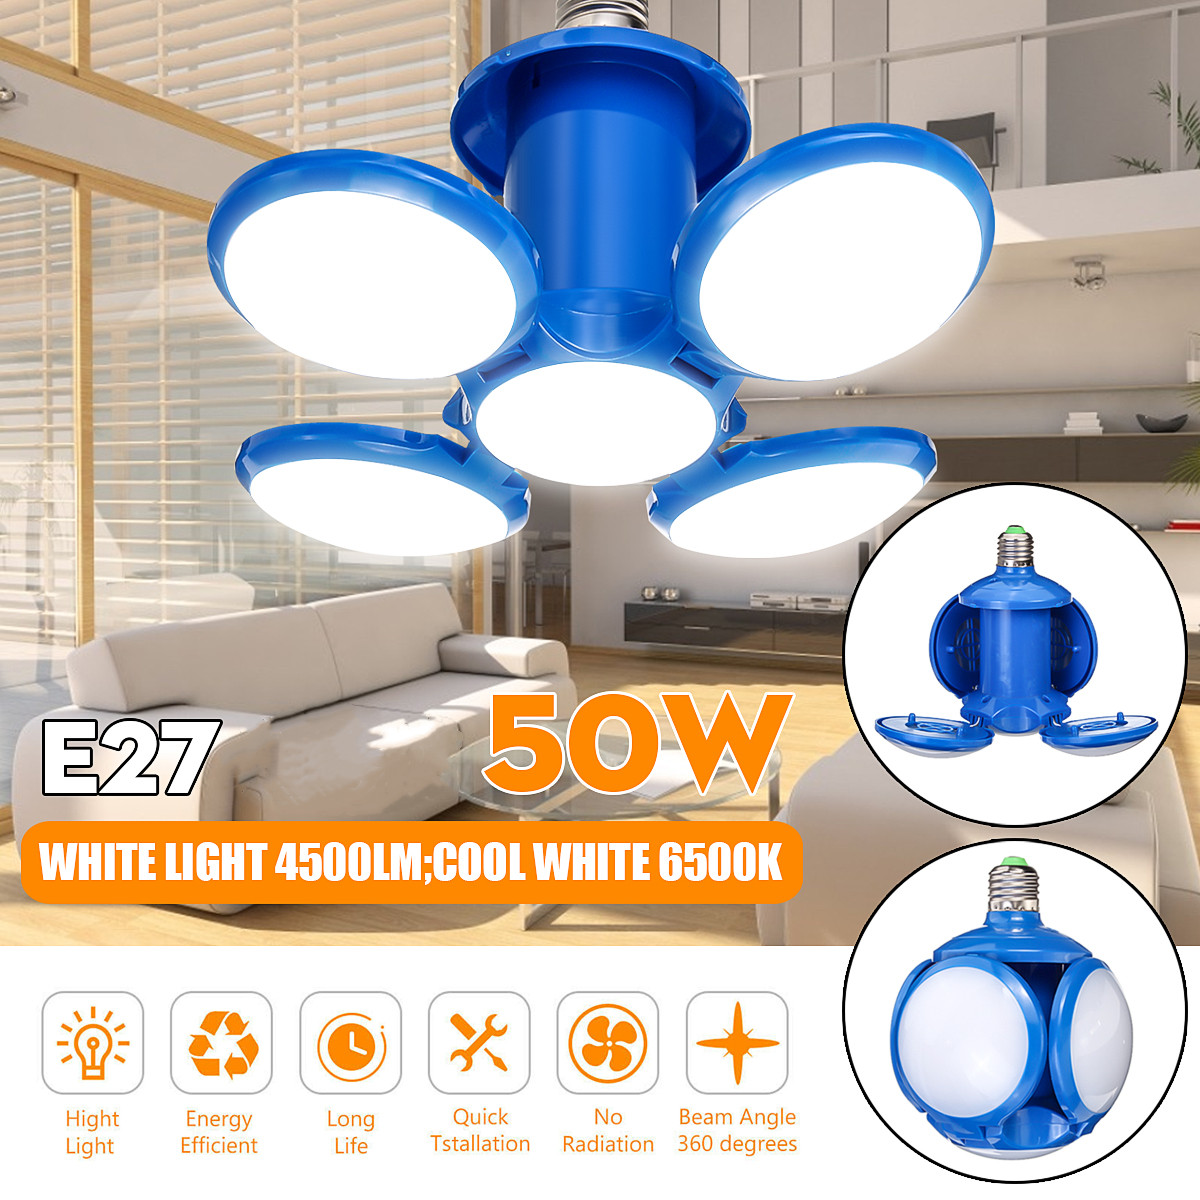 E27-50W-Deformable-Football-Night-Light-LED-Bulb-Ceiling-Bar-Lamp-100-265V-1697092-1